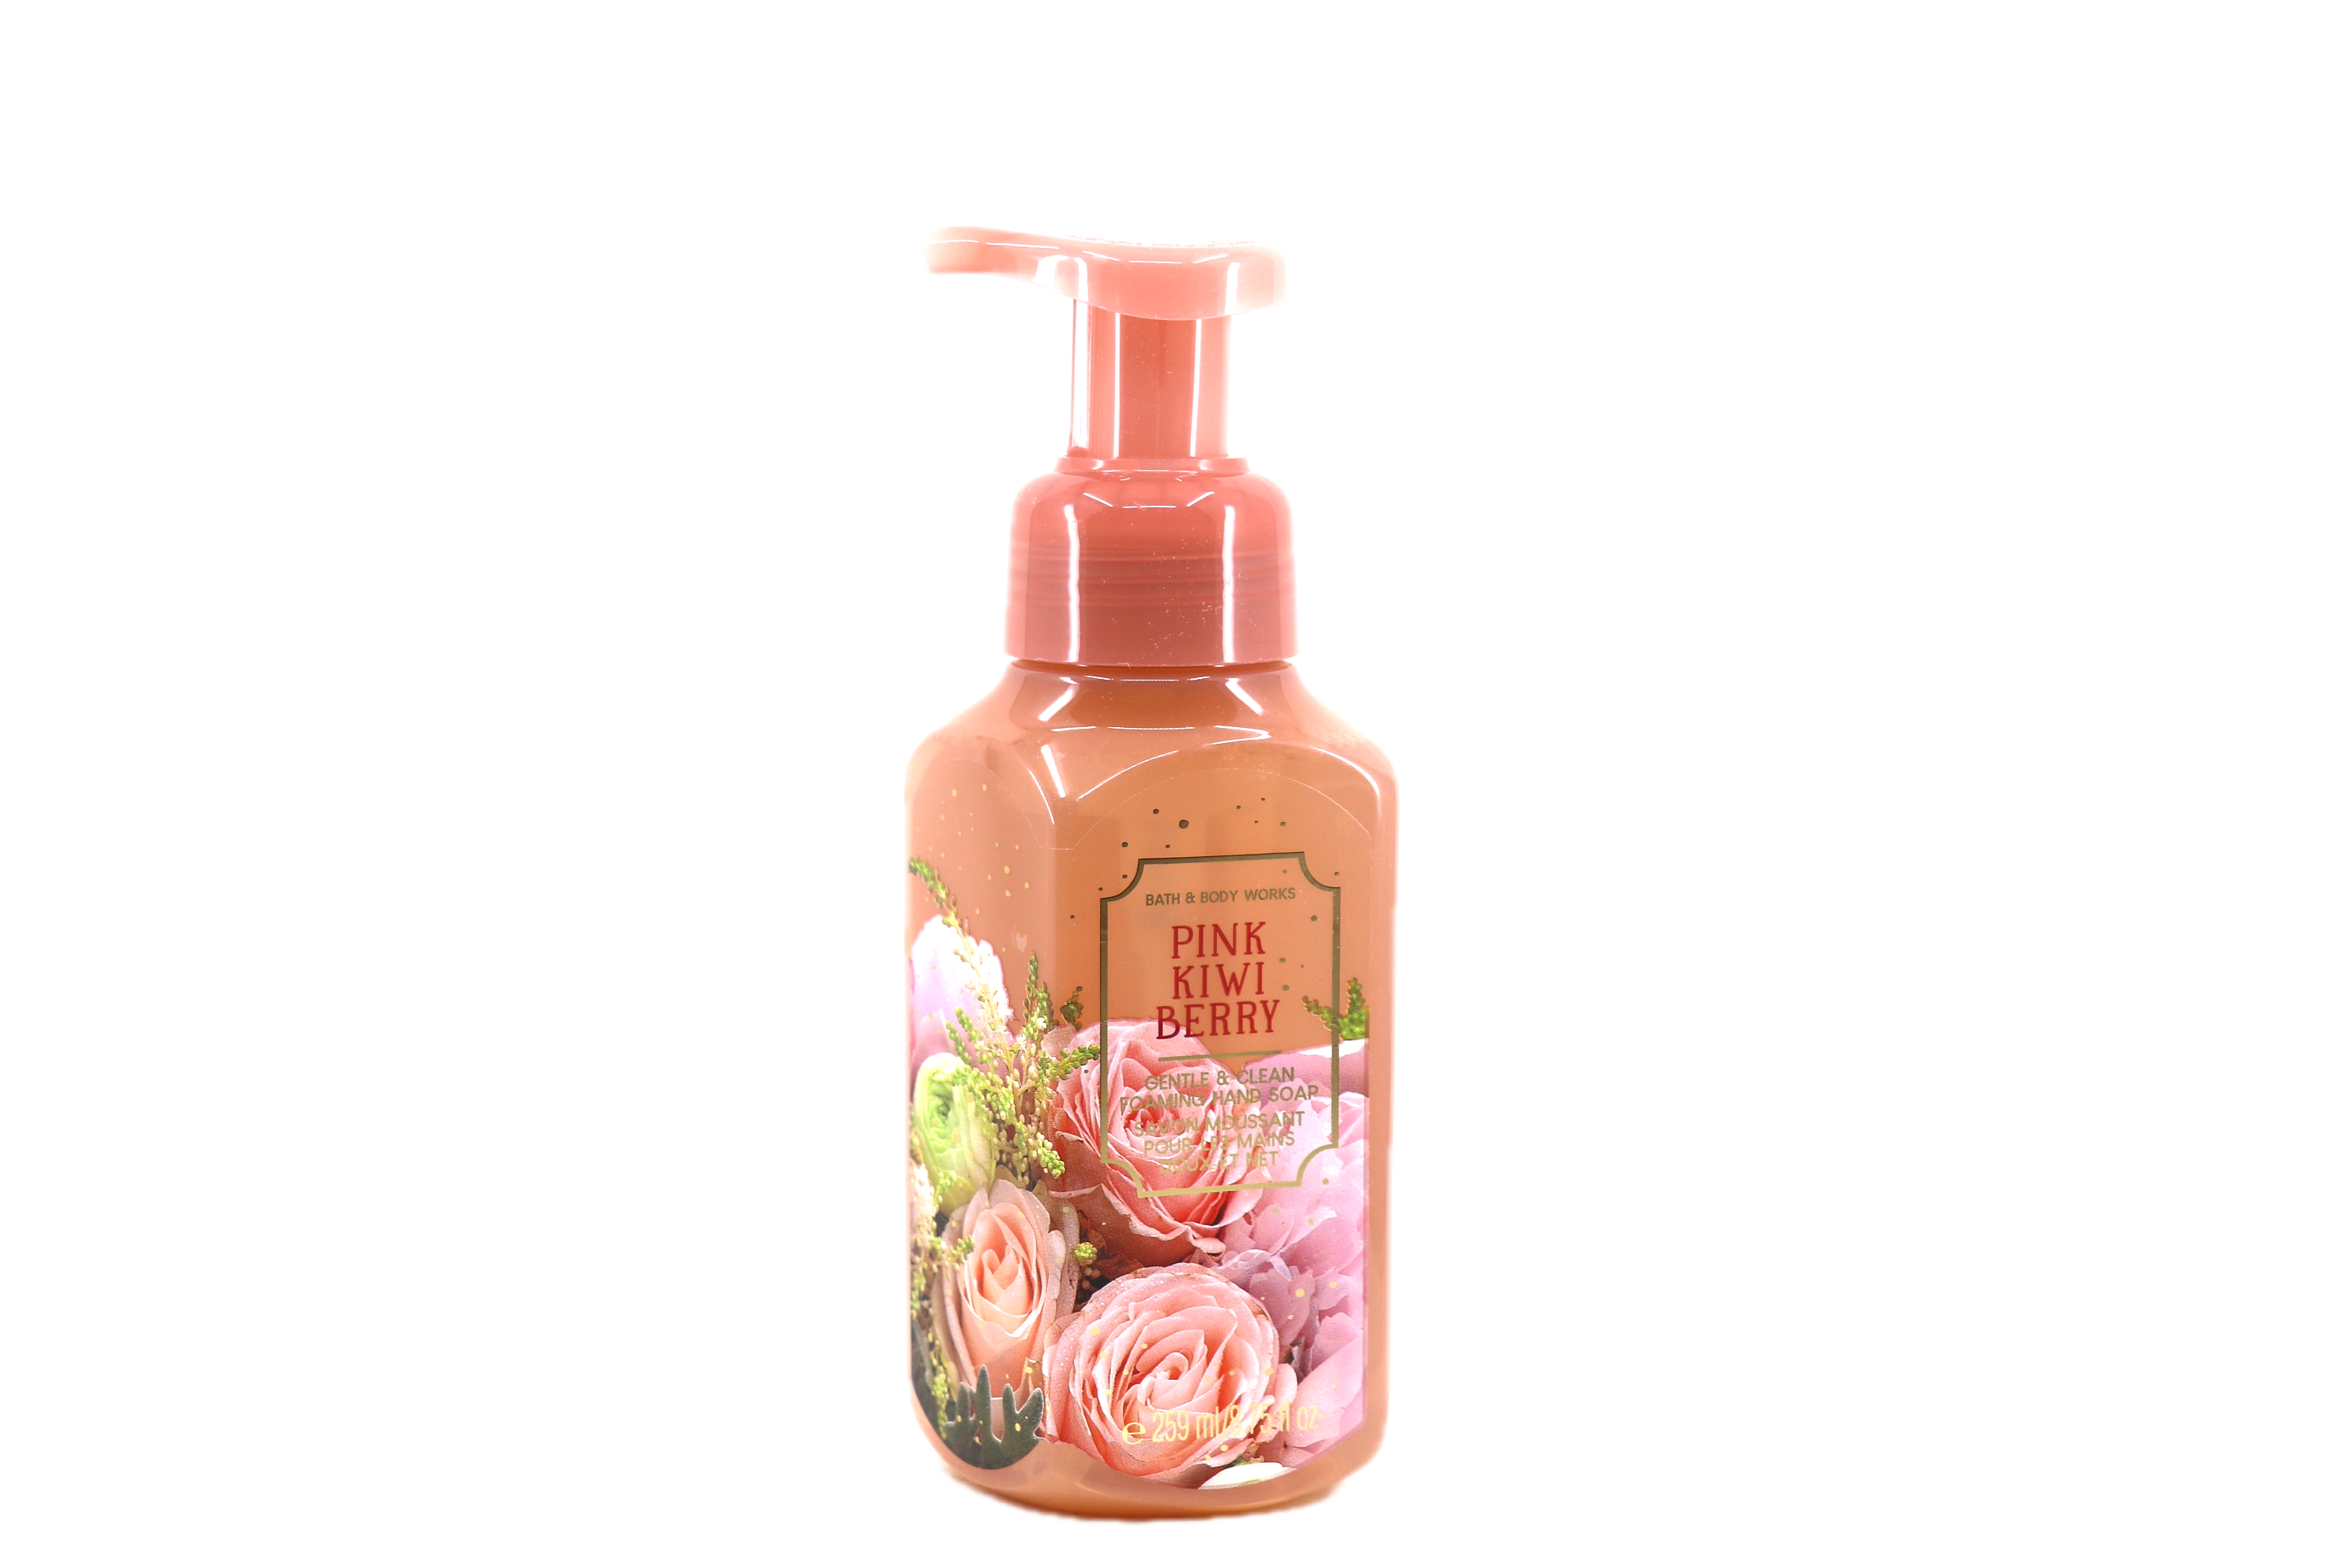 Bath & Body Works Pink Kiwi Berry Gentle Foaming Hand Soap